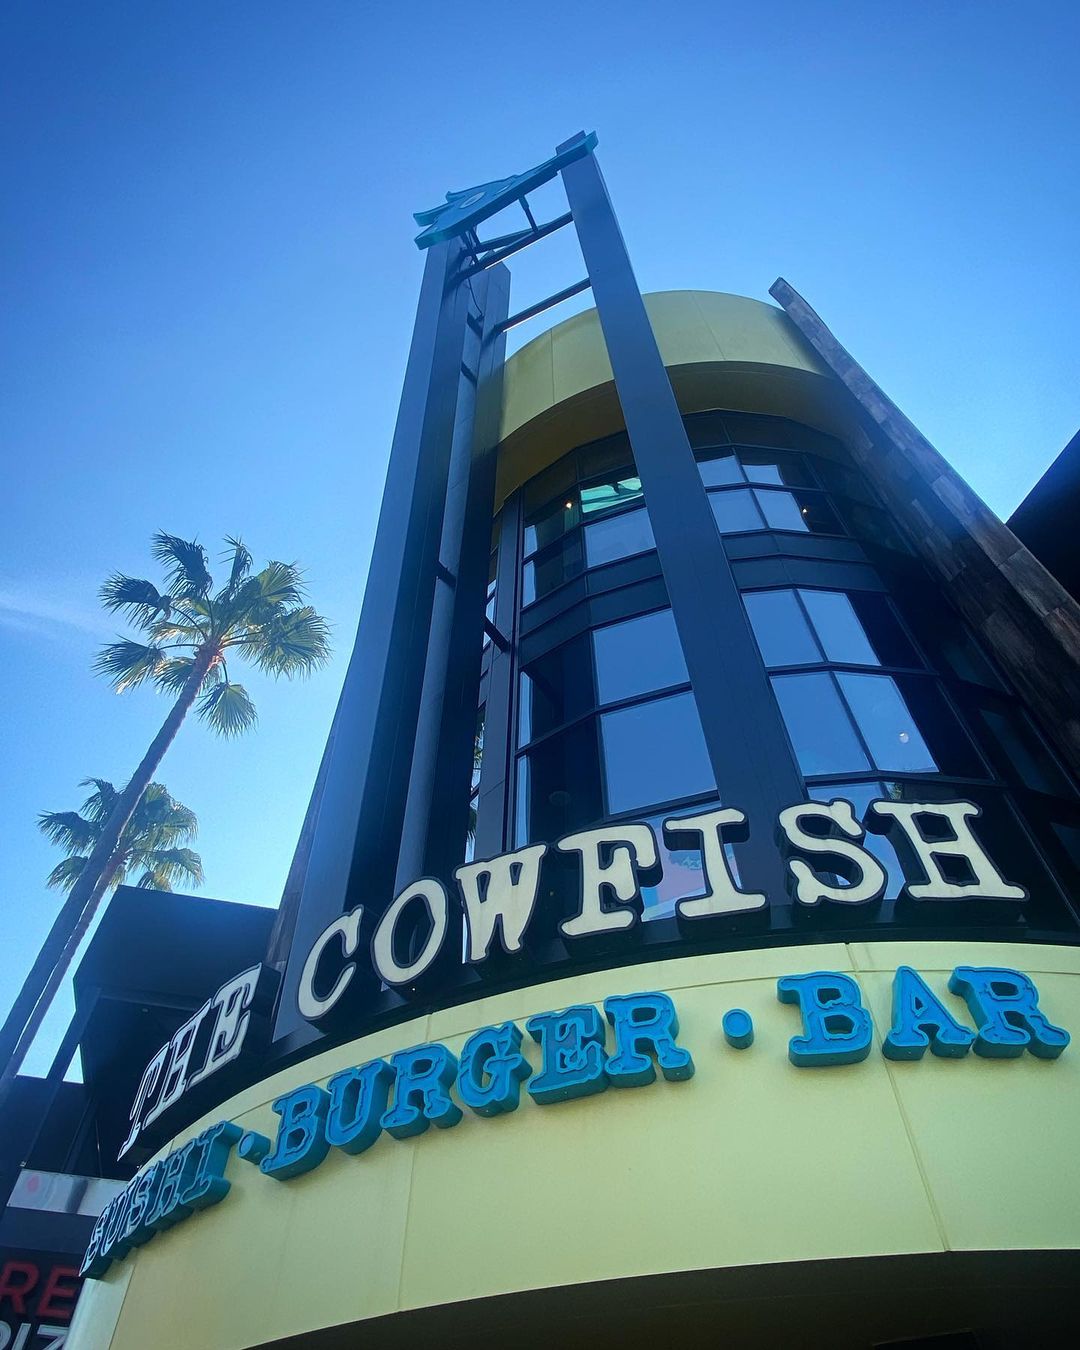 CowFish at Citywalk